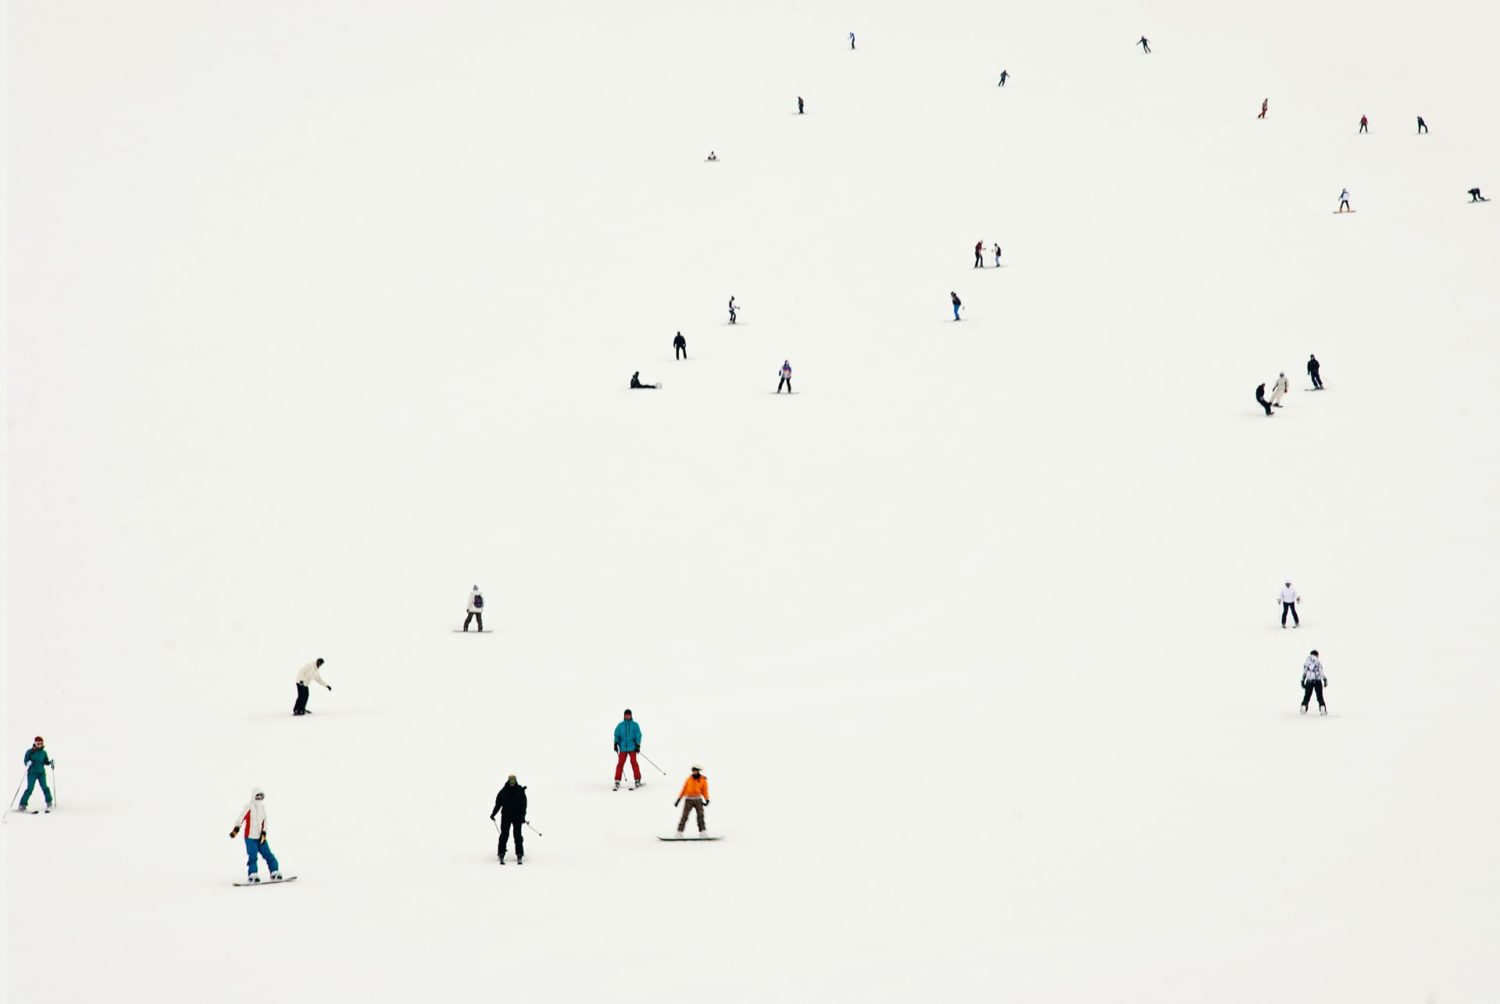 Ski crowds